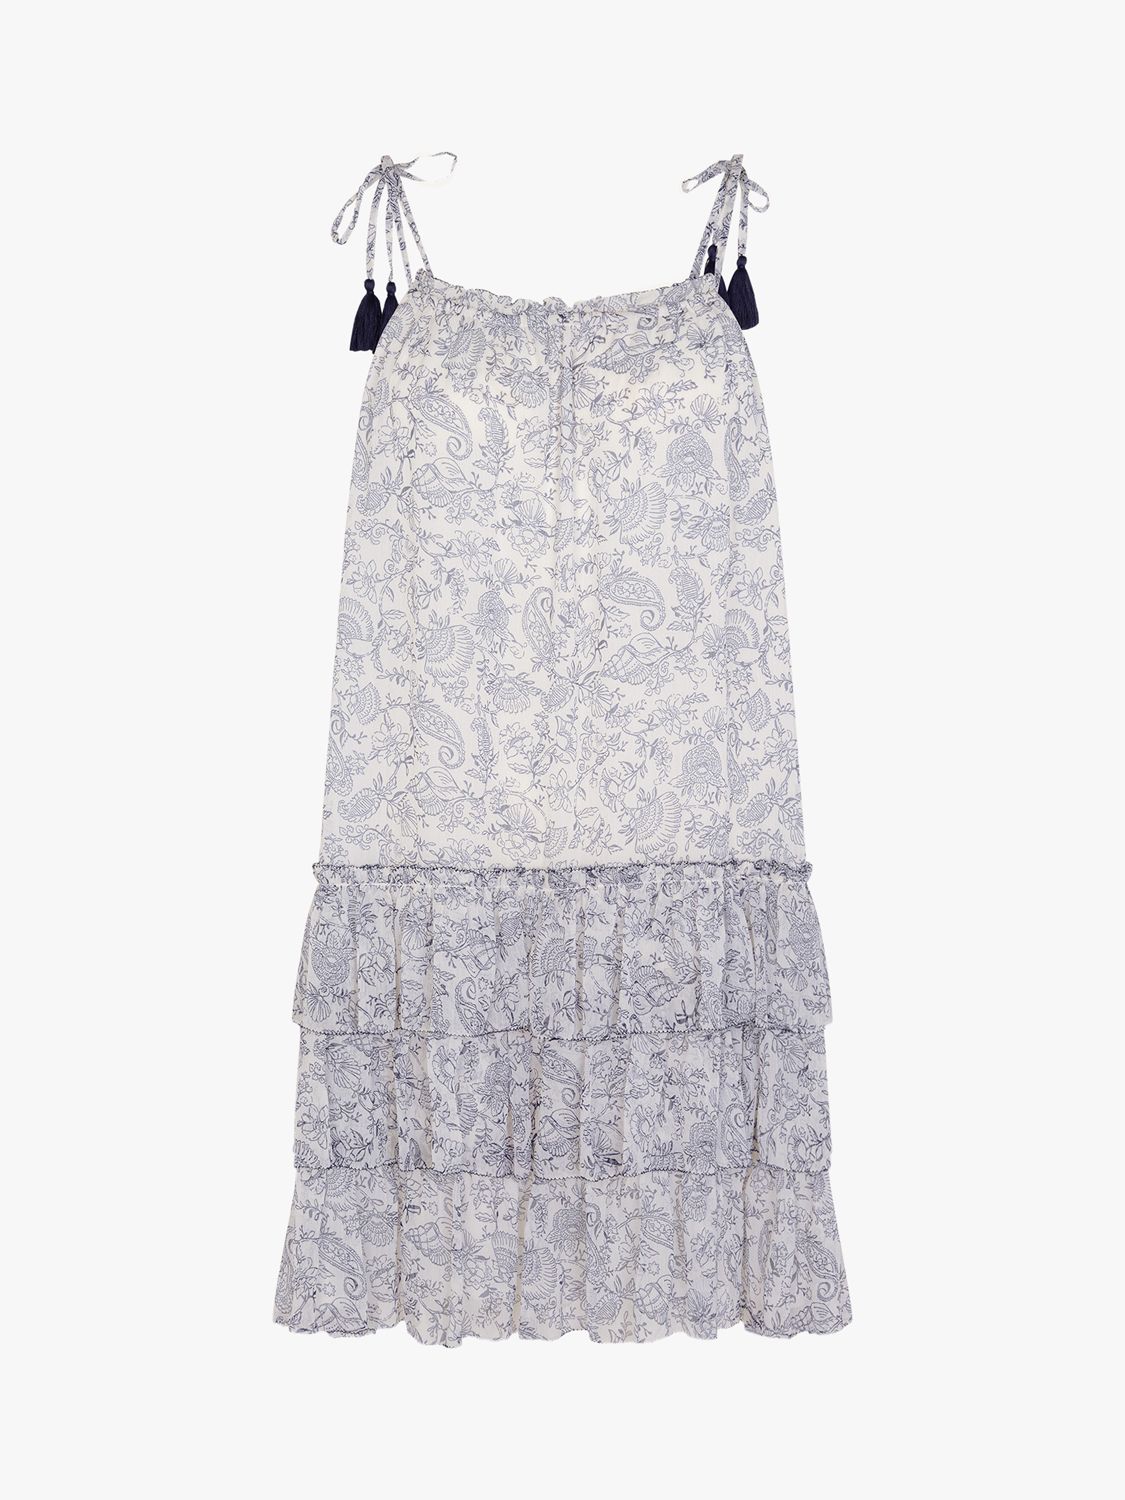 Accessorize Strappy Tiered Mini Dress, White/Multi, L